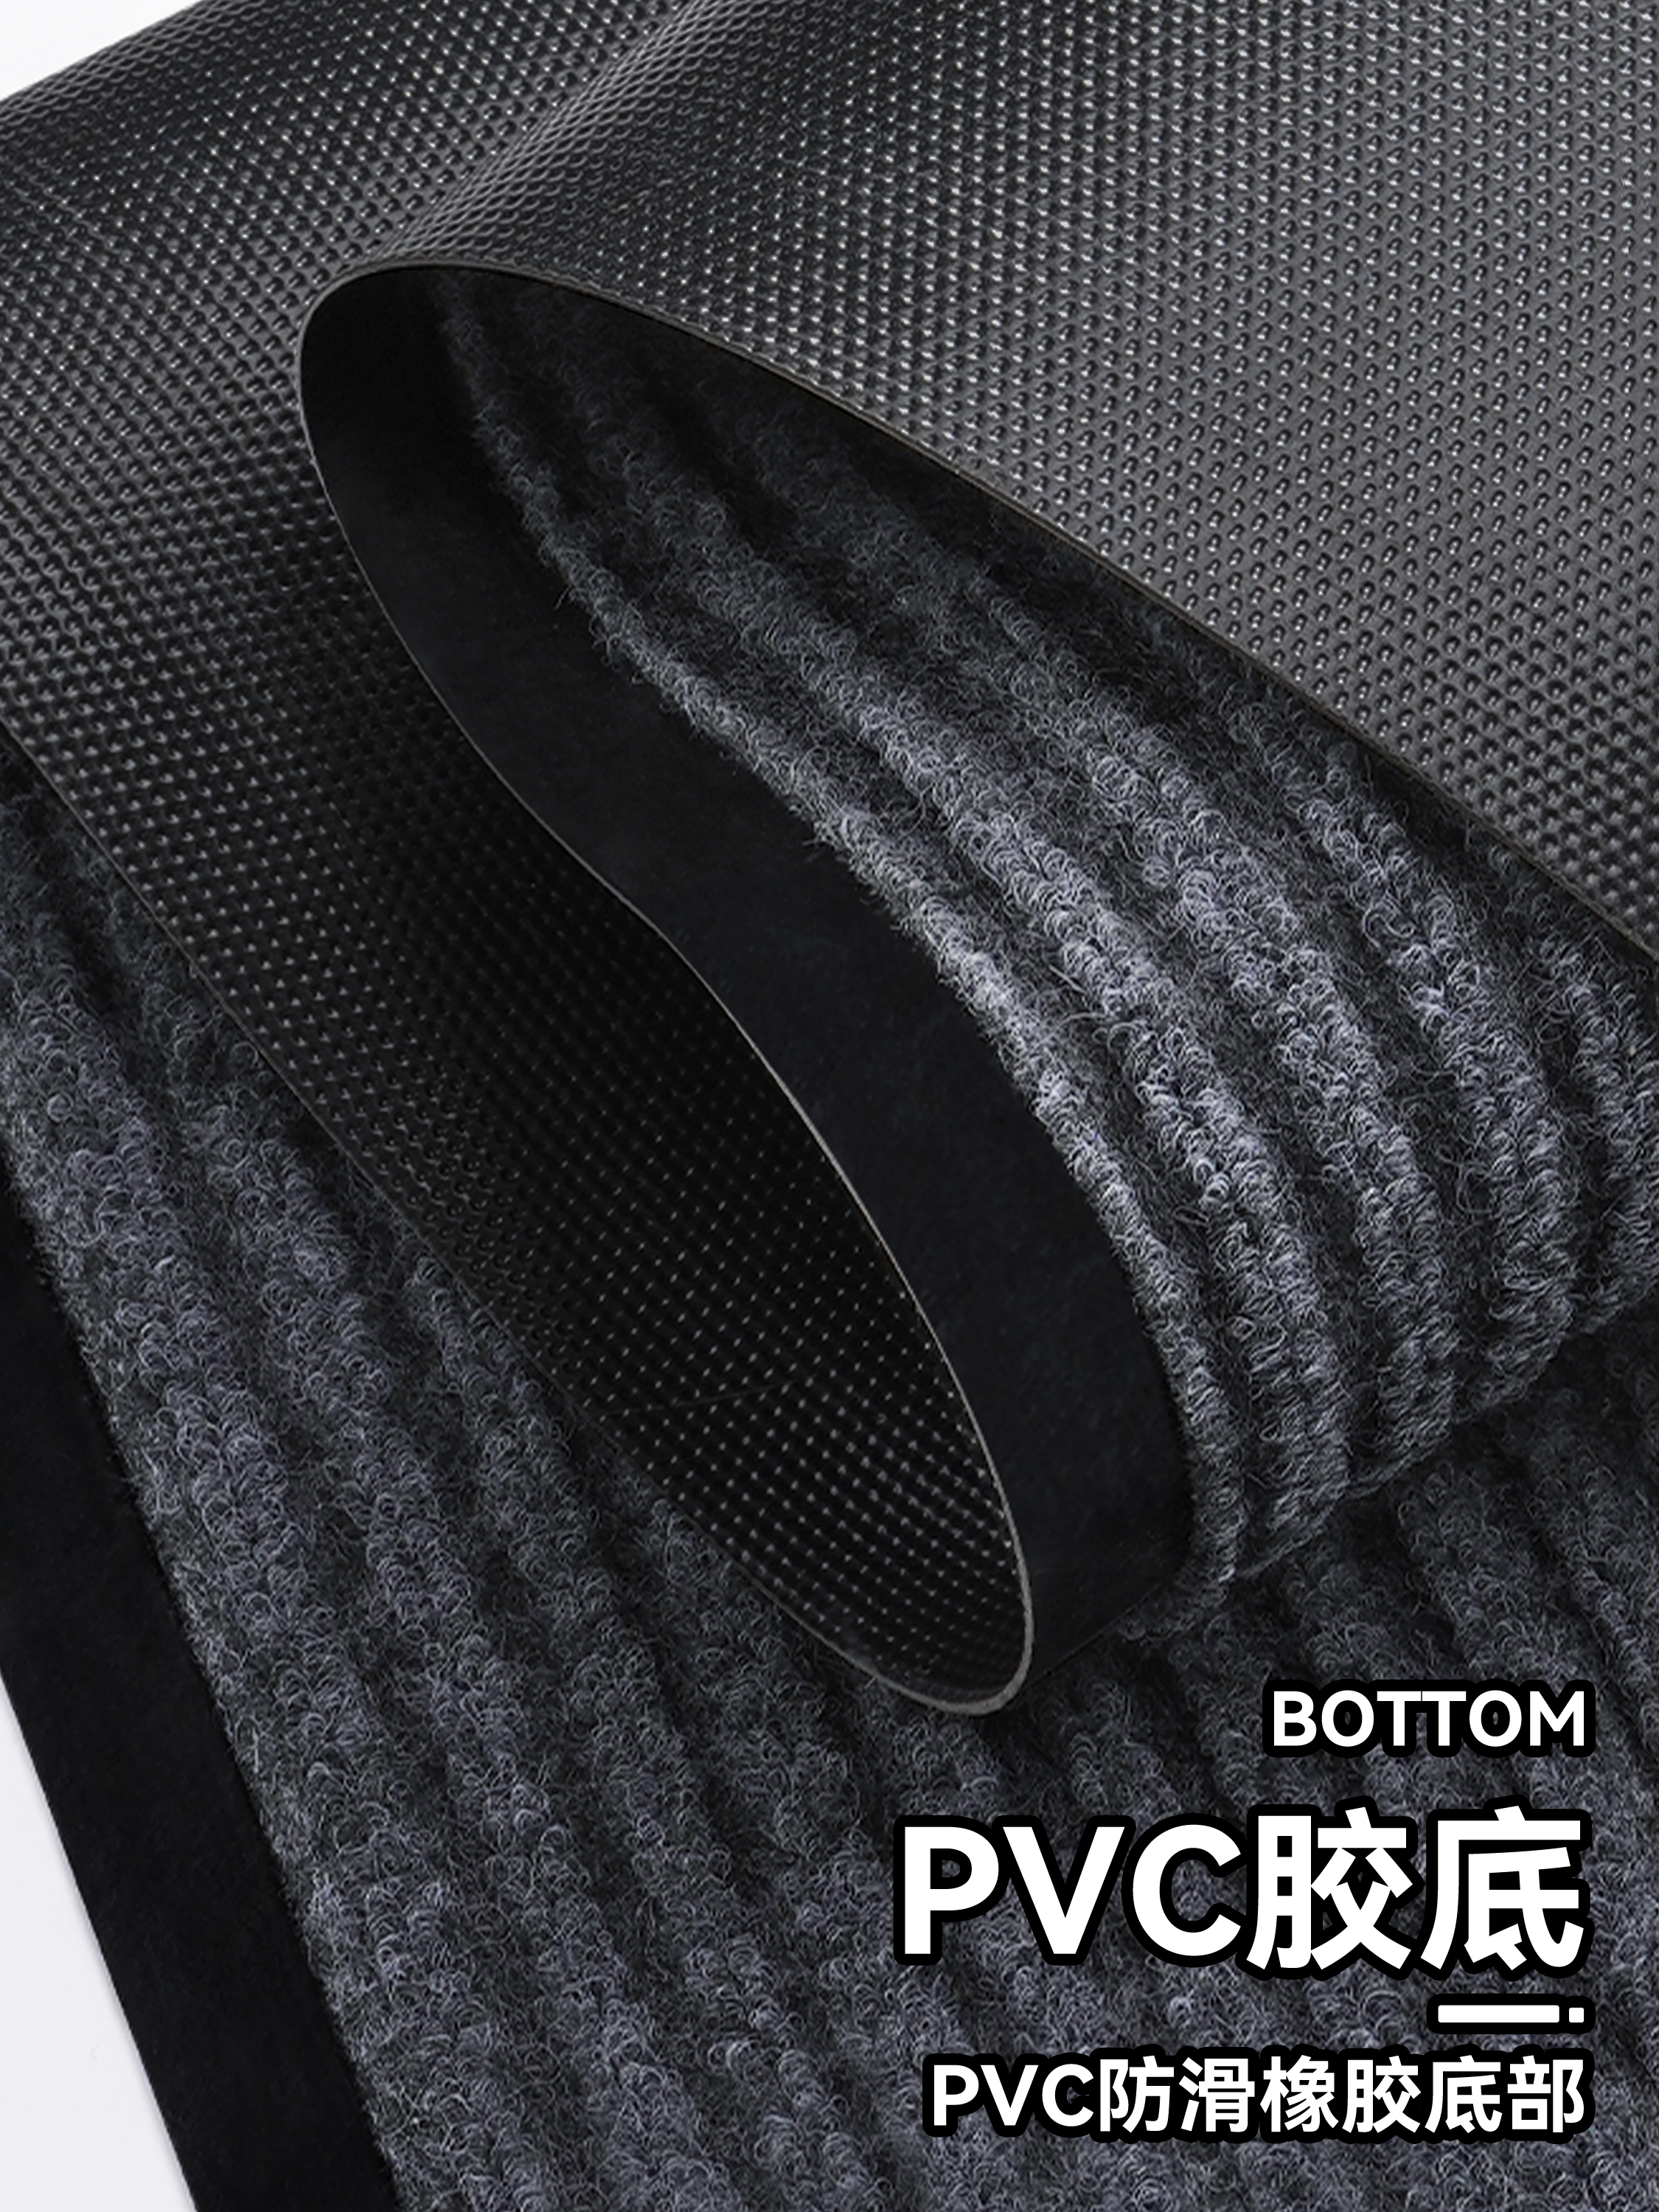 商用可裁剪地毯  PVC防滑吸水地墊  大面積迎賓地毯